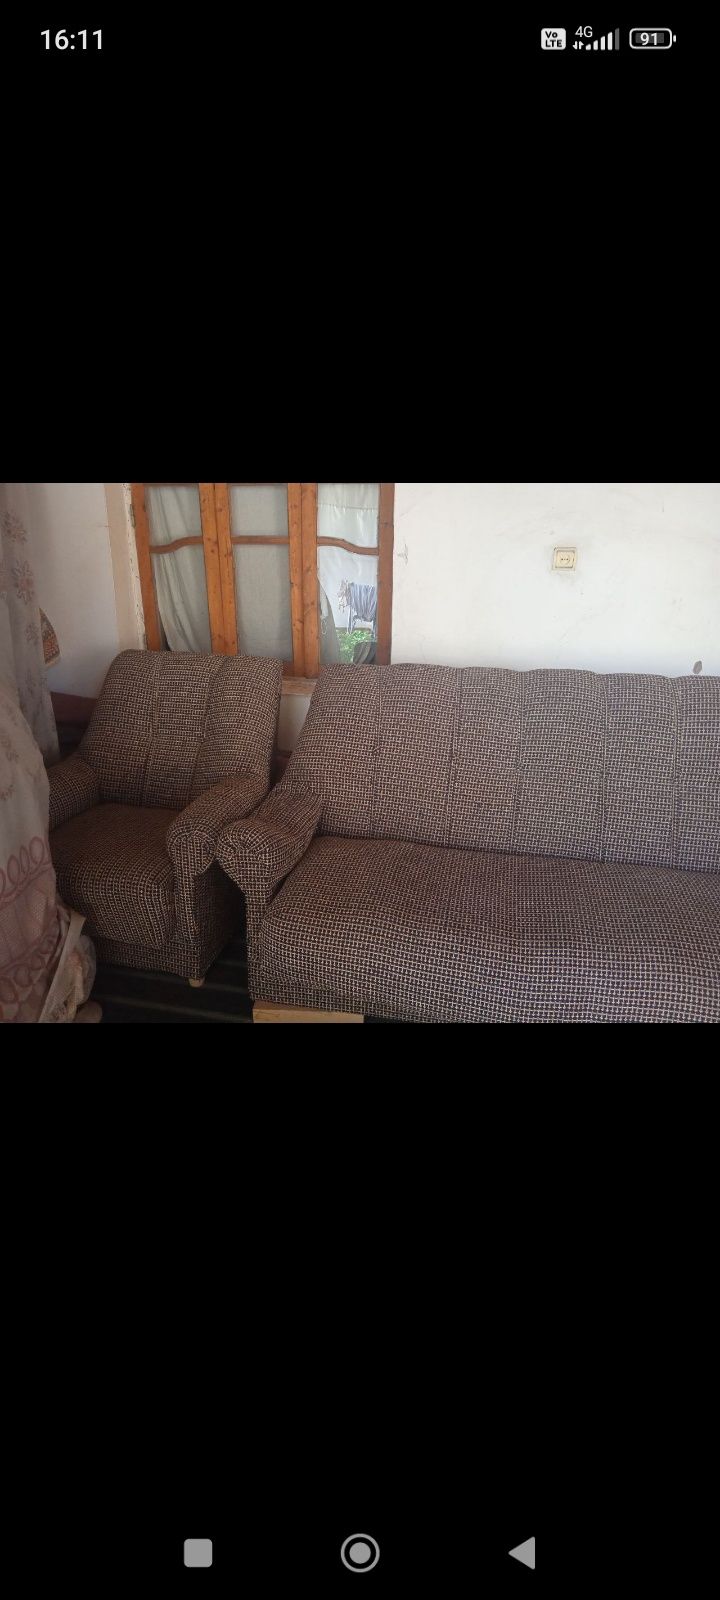 Продается комплект диван 2 кресла